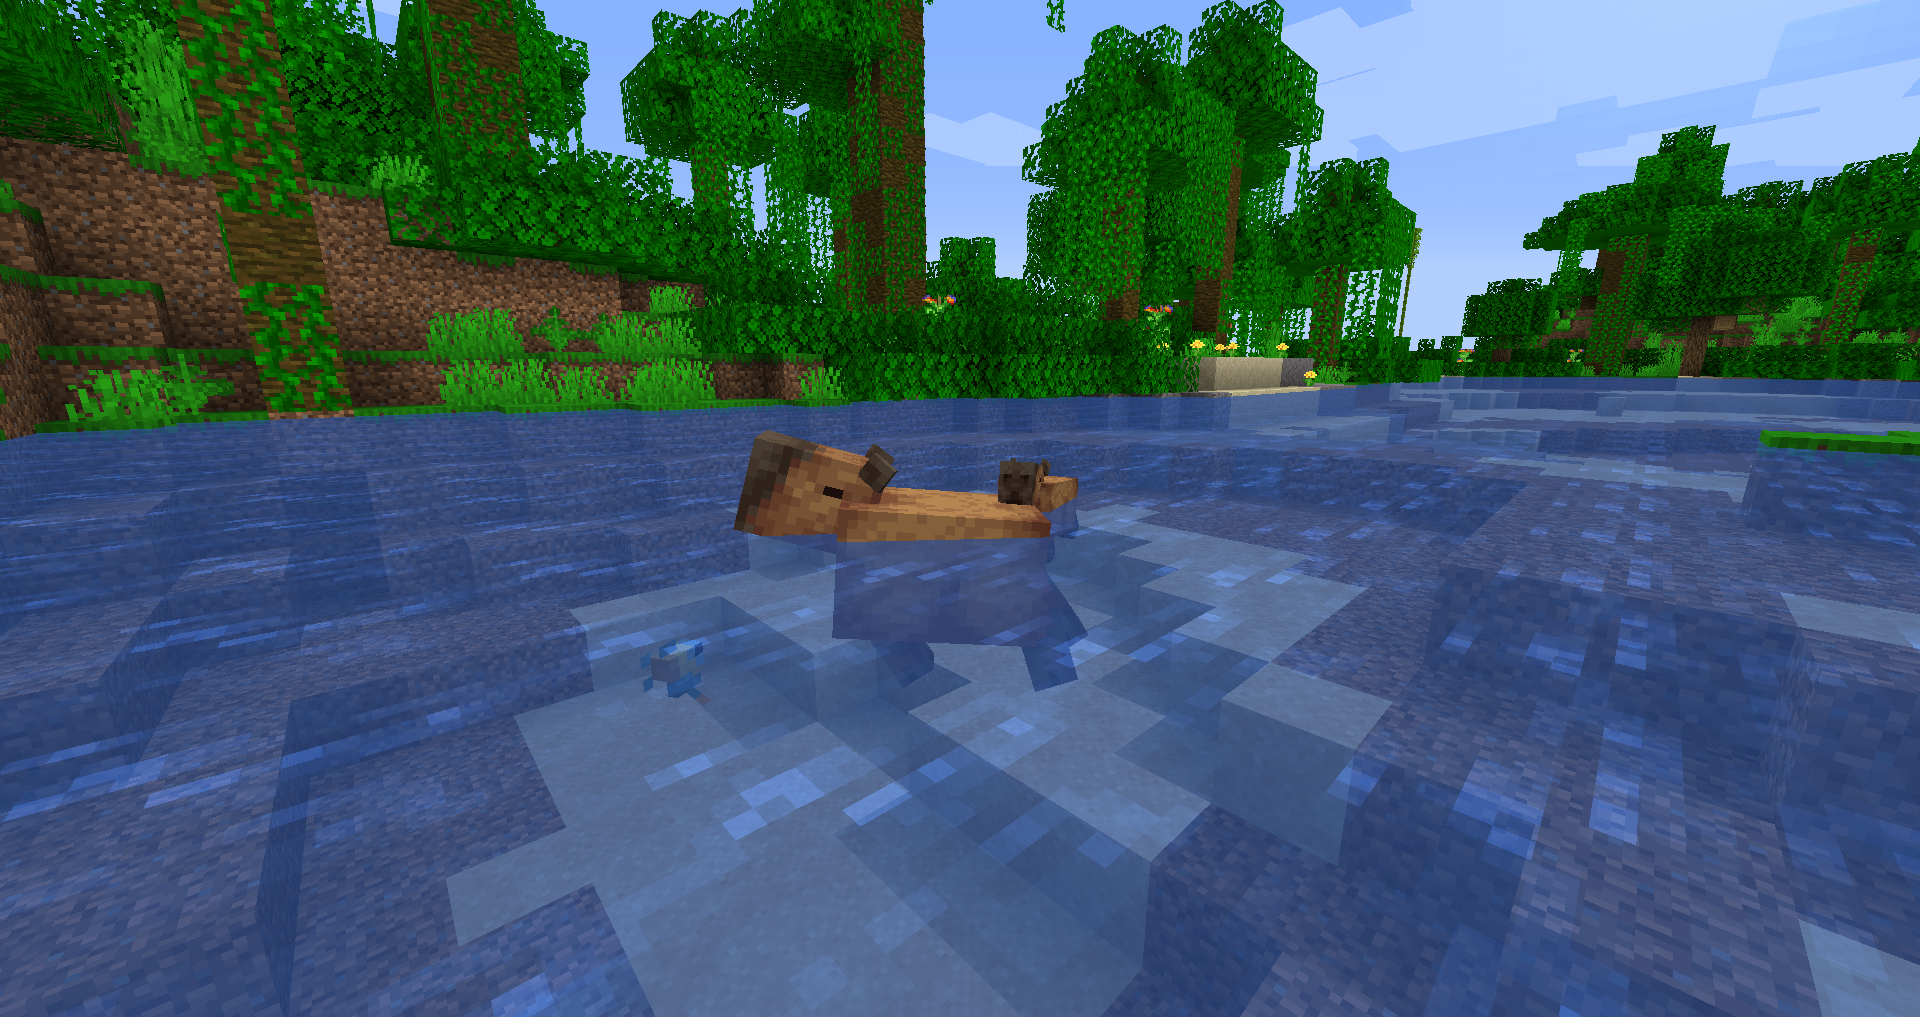 Capybara!3.0 by ThreadyPilot For Minecraft Mods